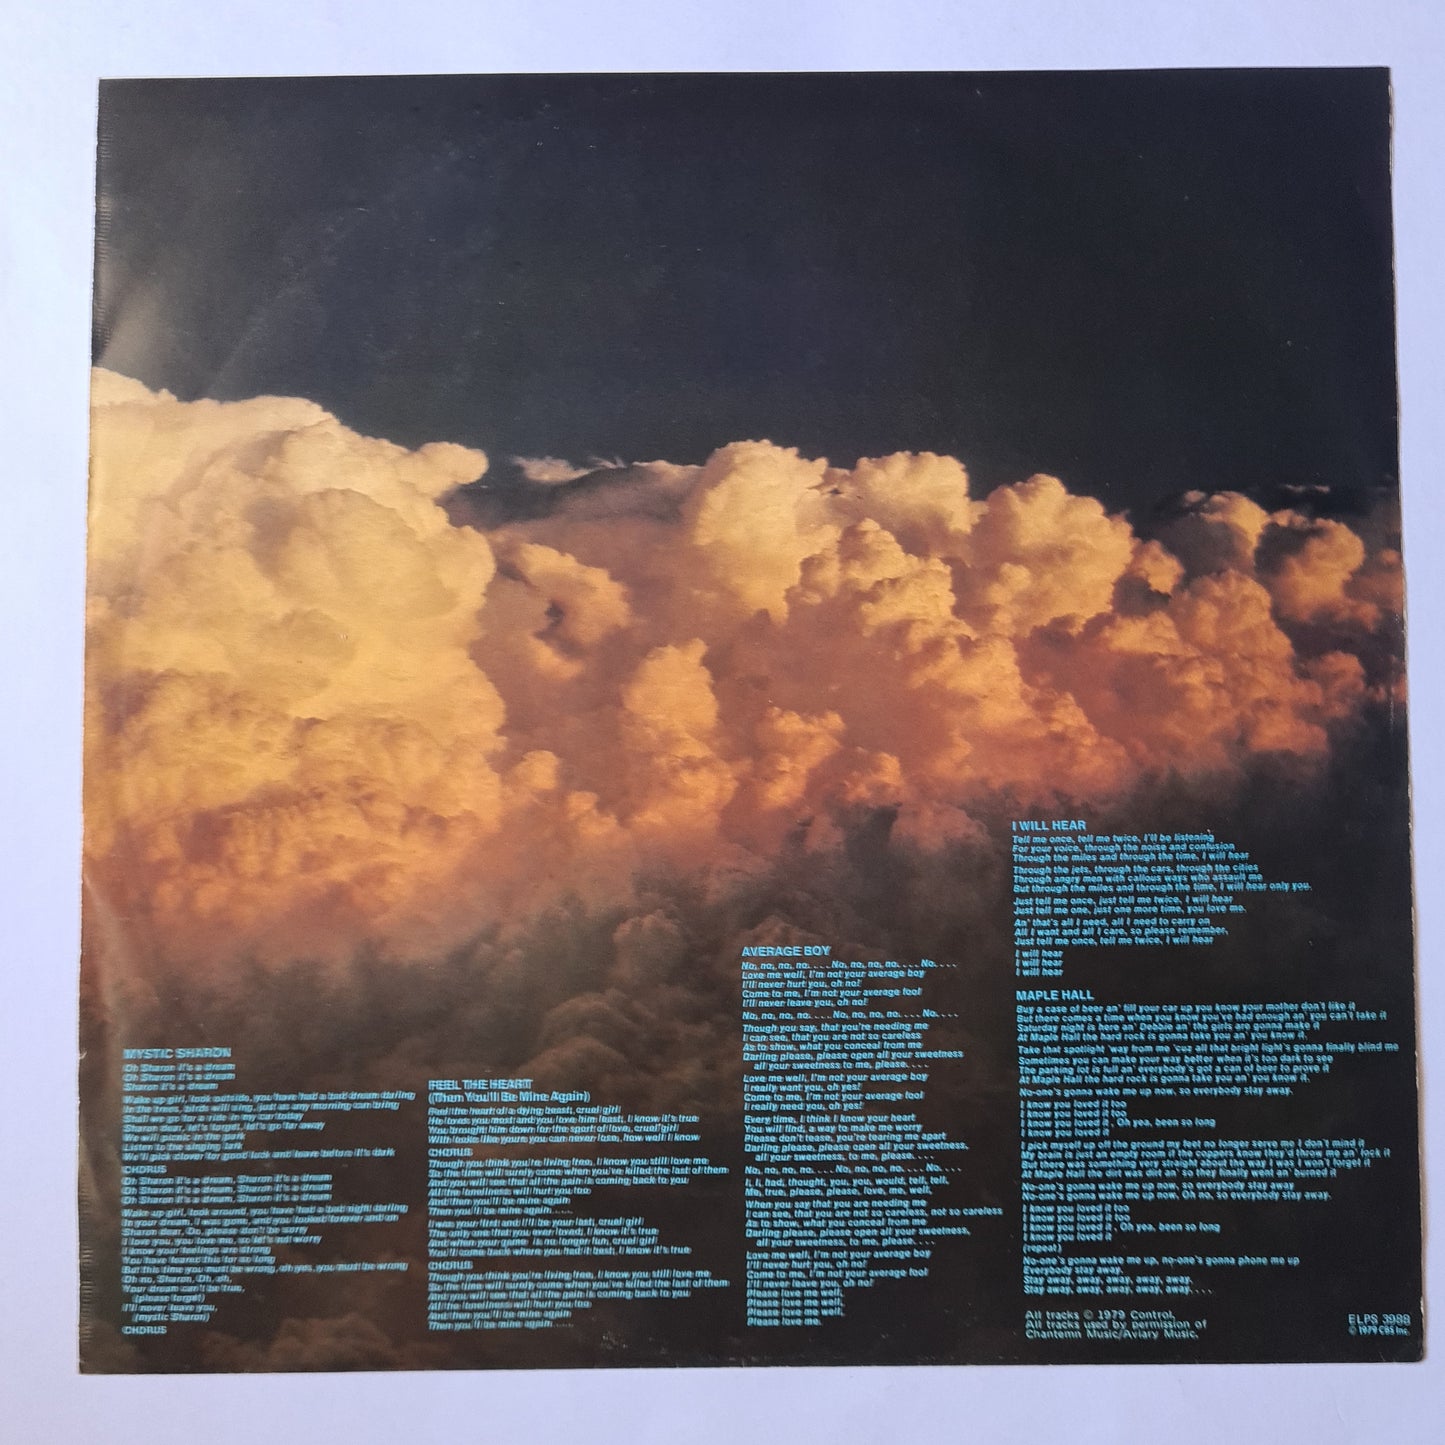 Aviary – Aviary - 1979 - Vinyl Record